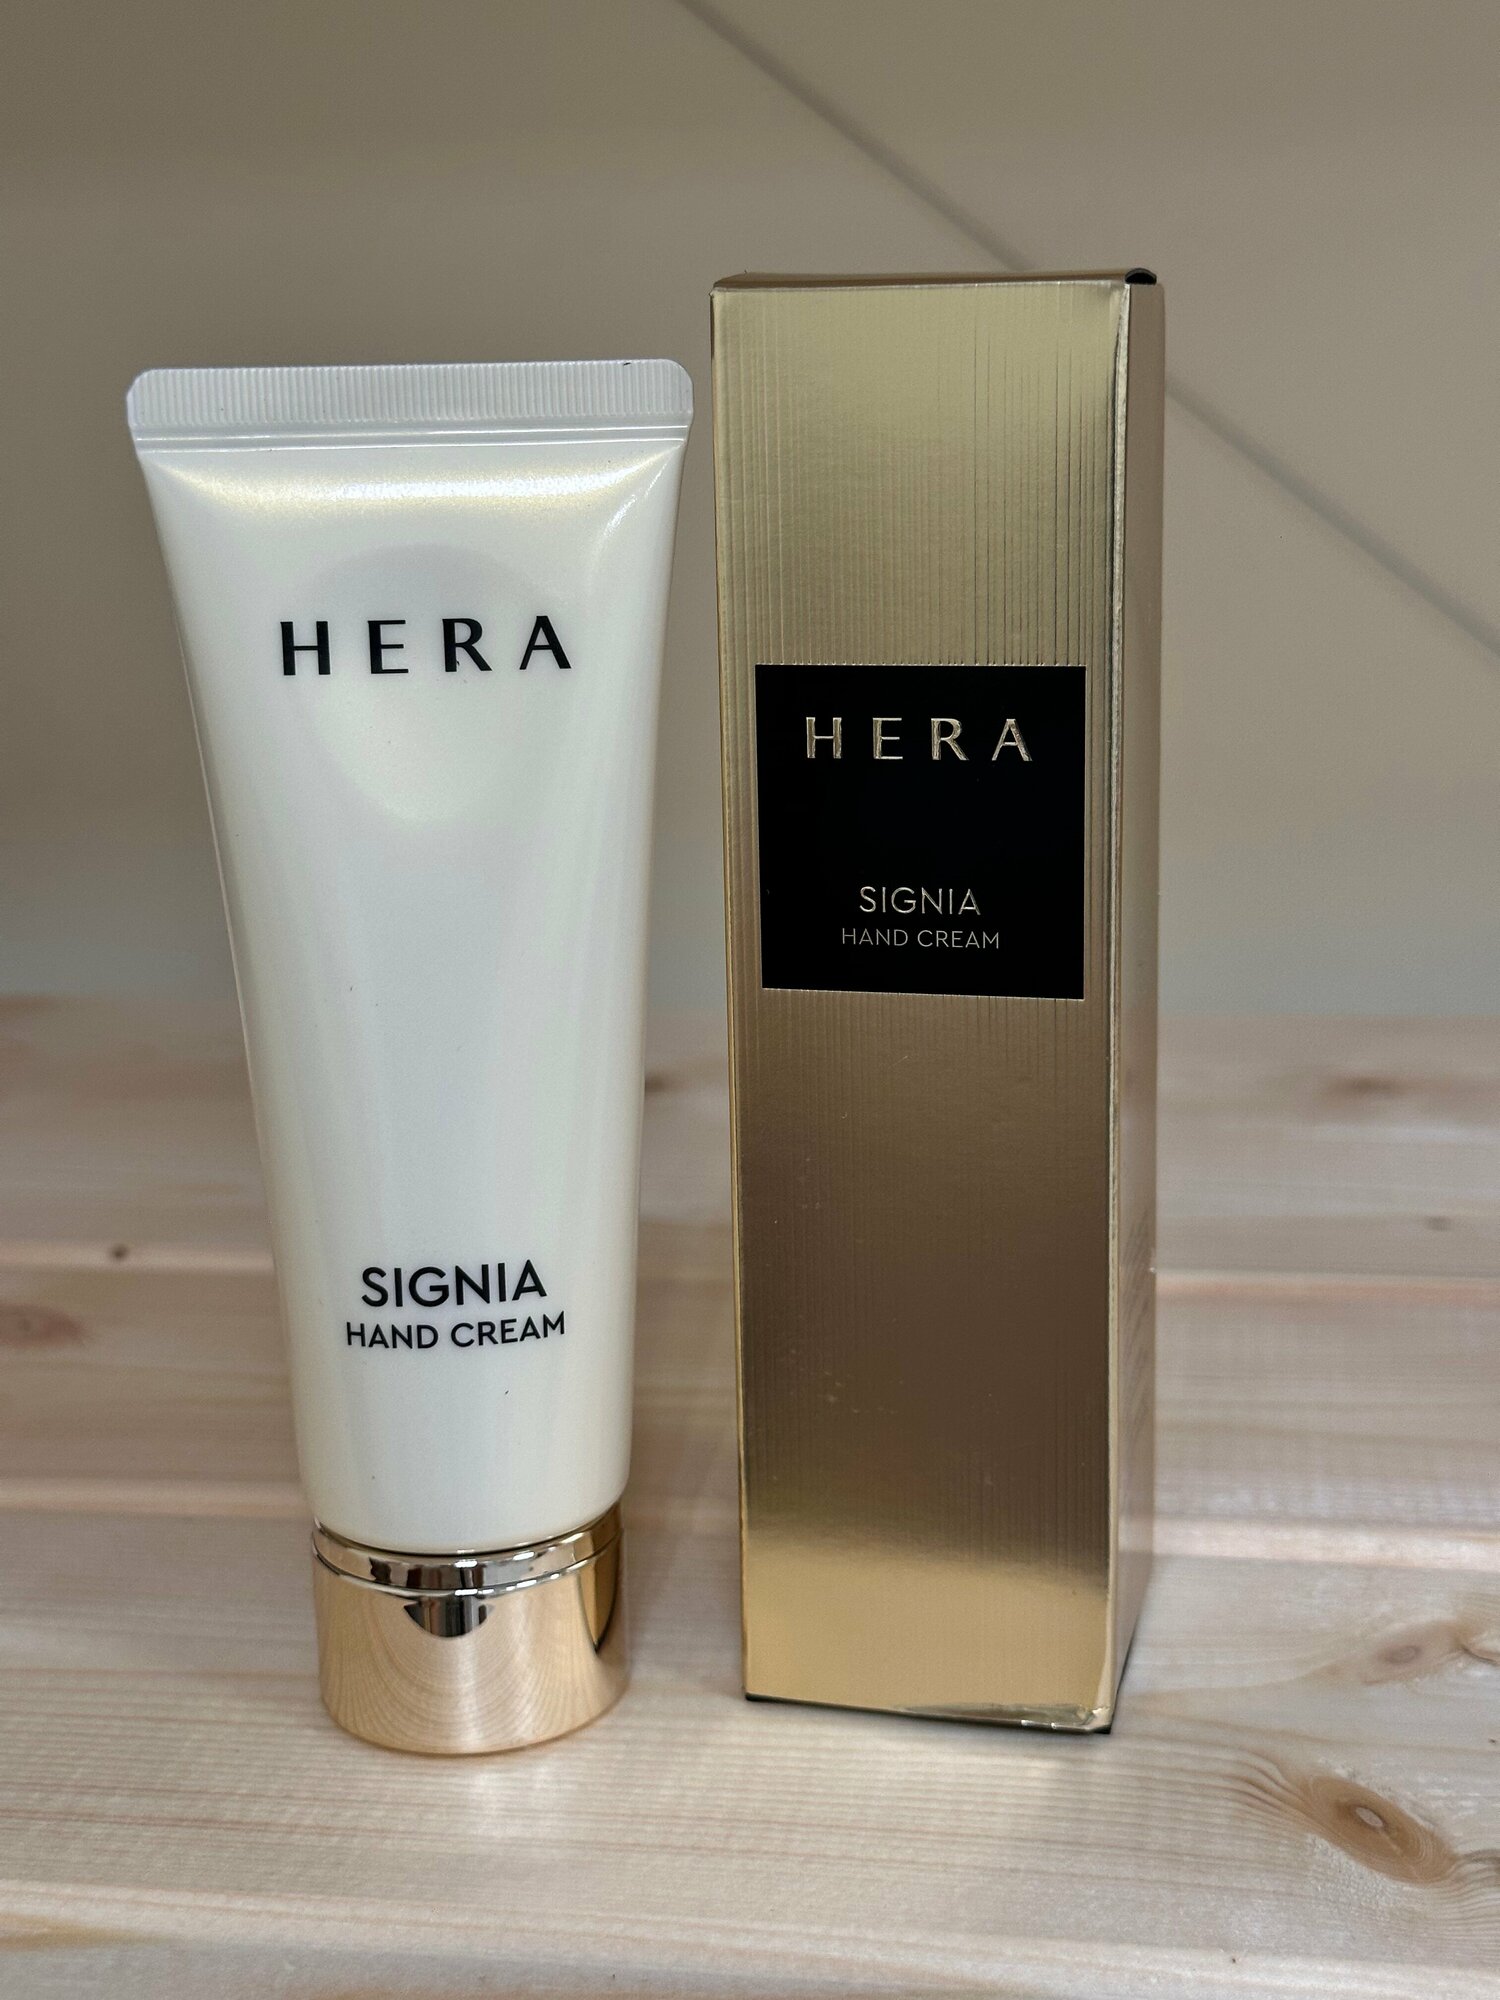 Hera Signia Hand Cream, крем для рук, 75 ml